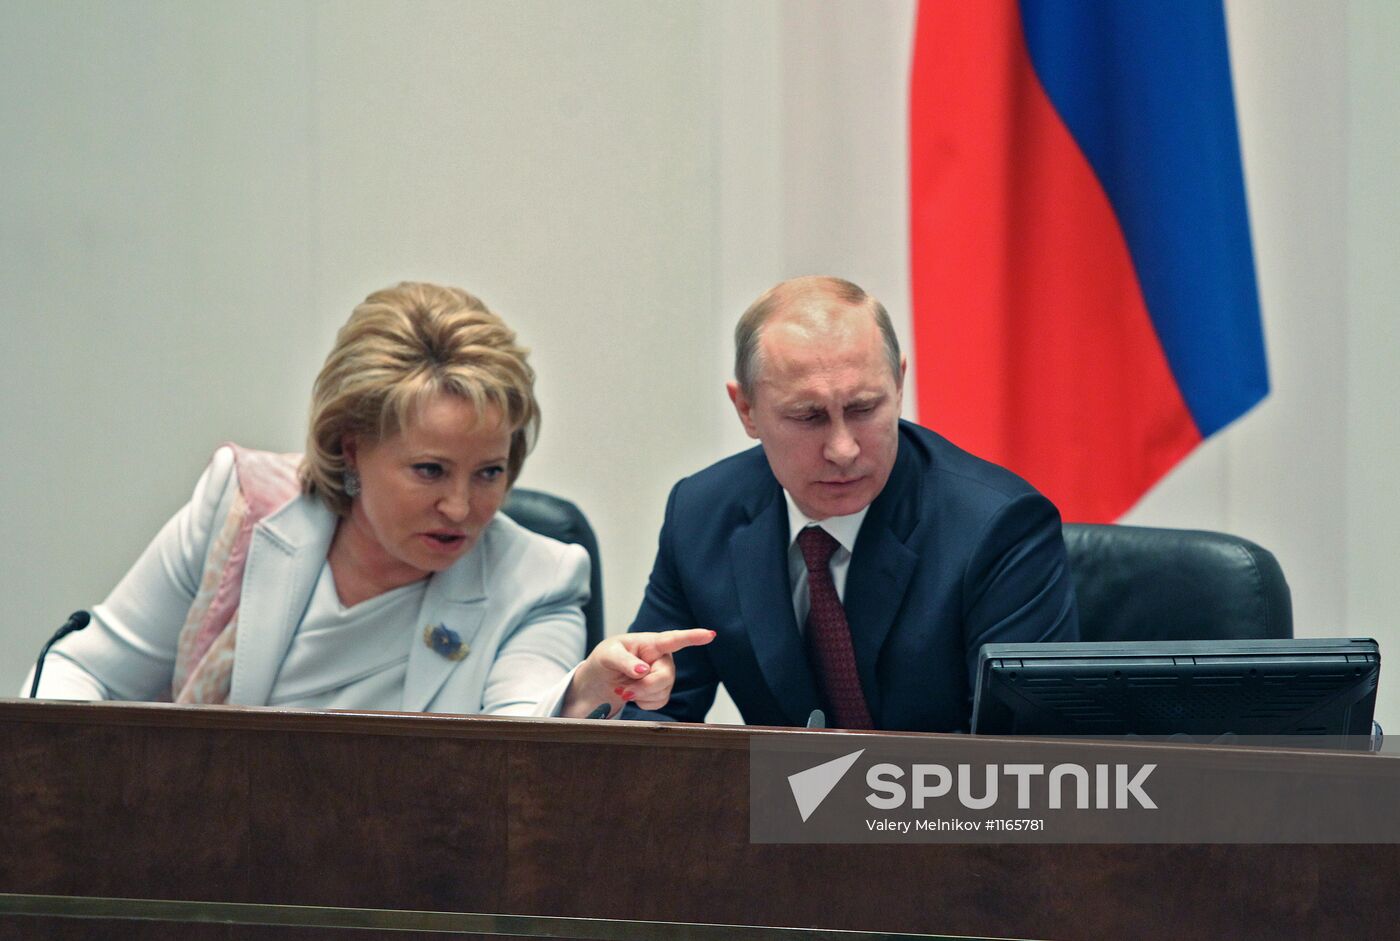 Vladimir Putin at Federation Council meeting